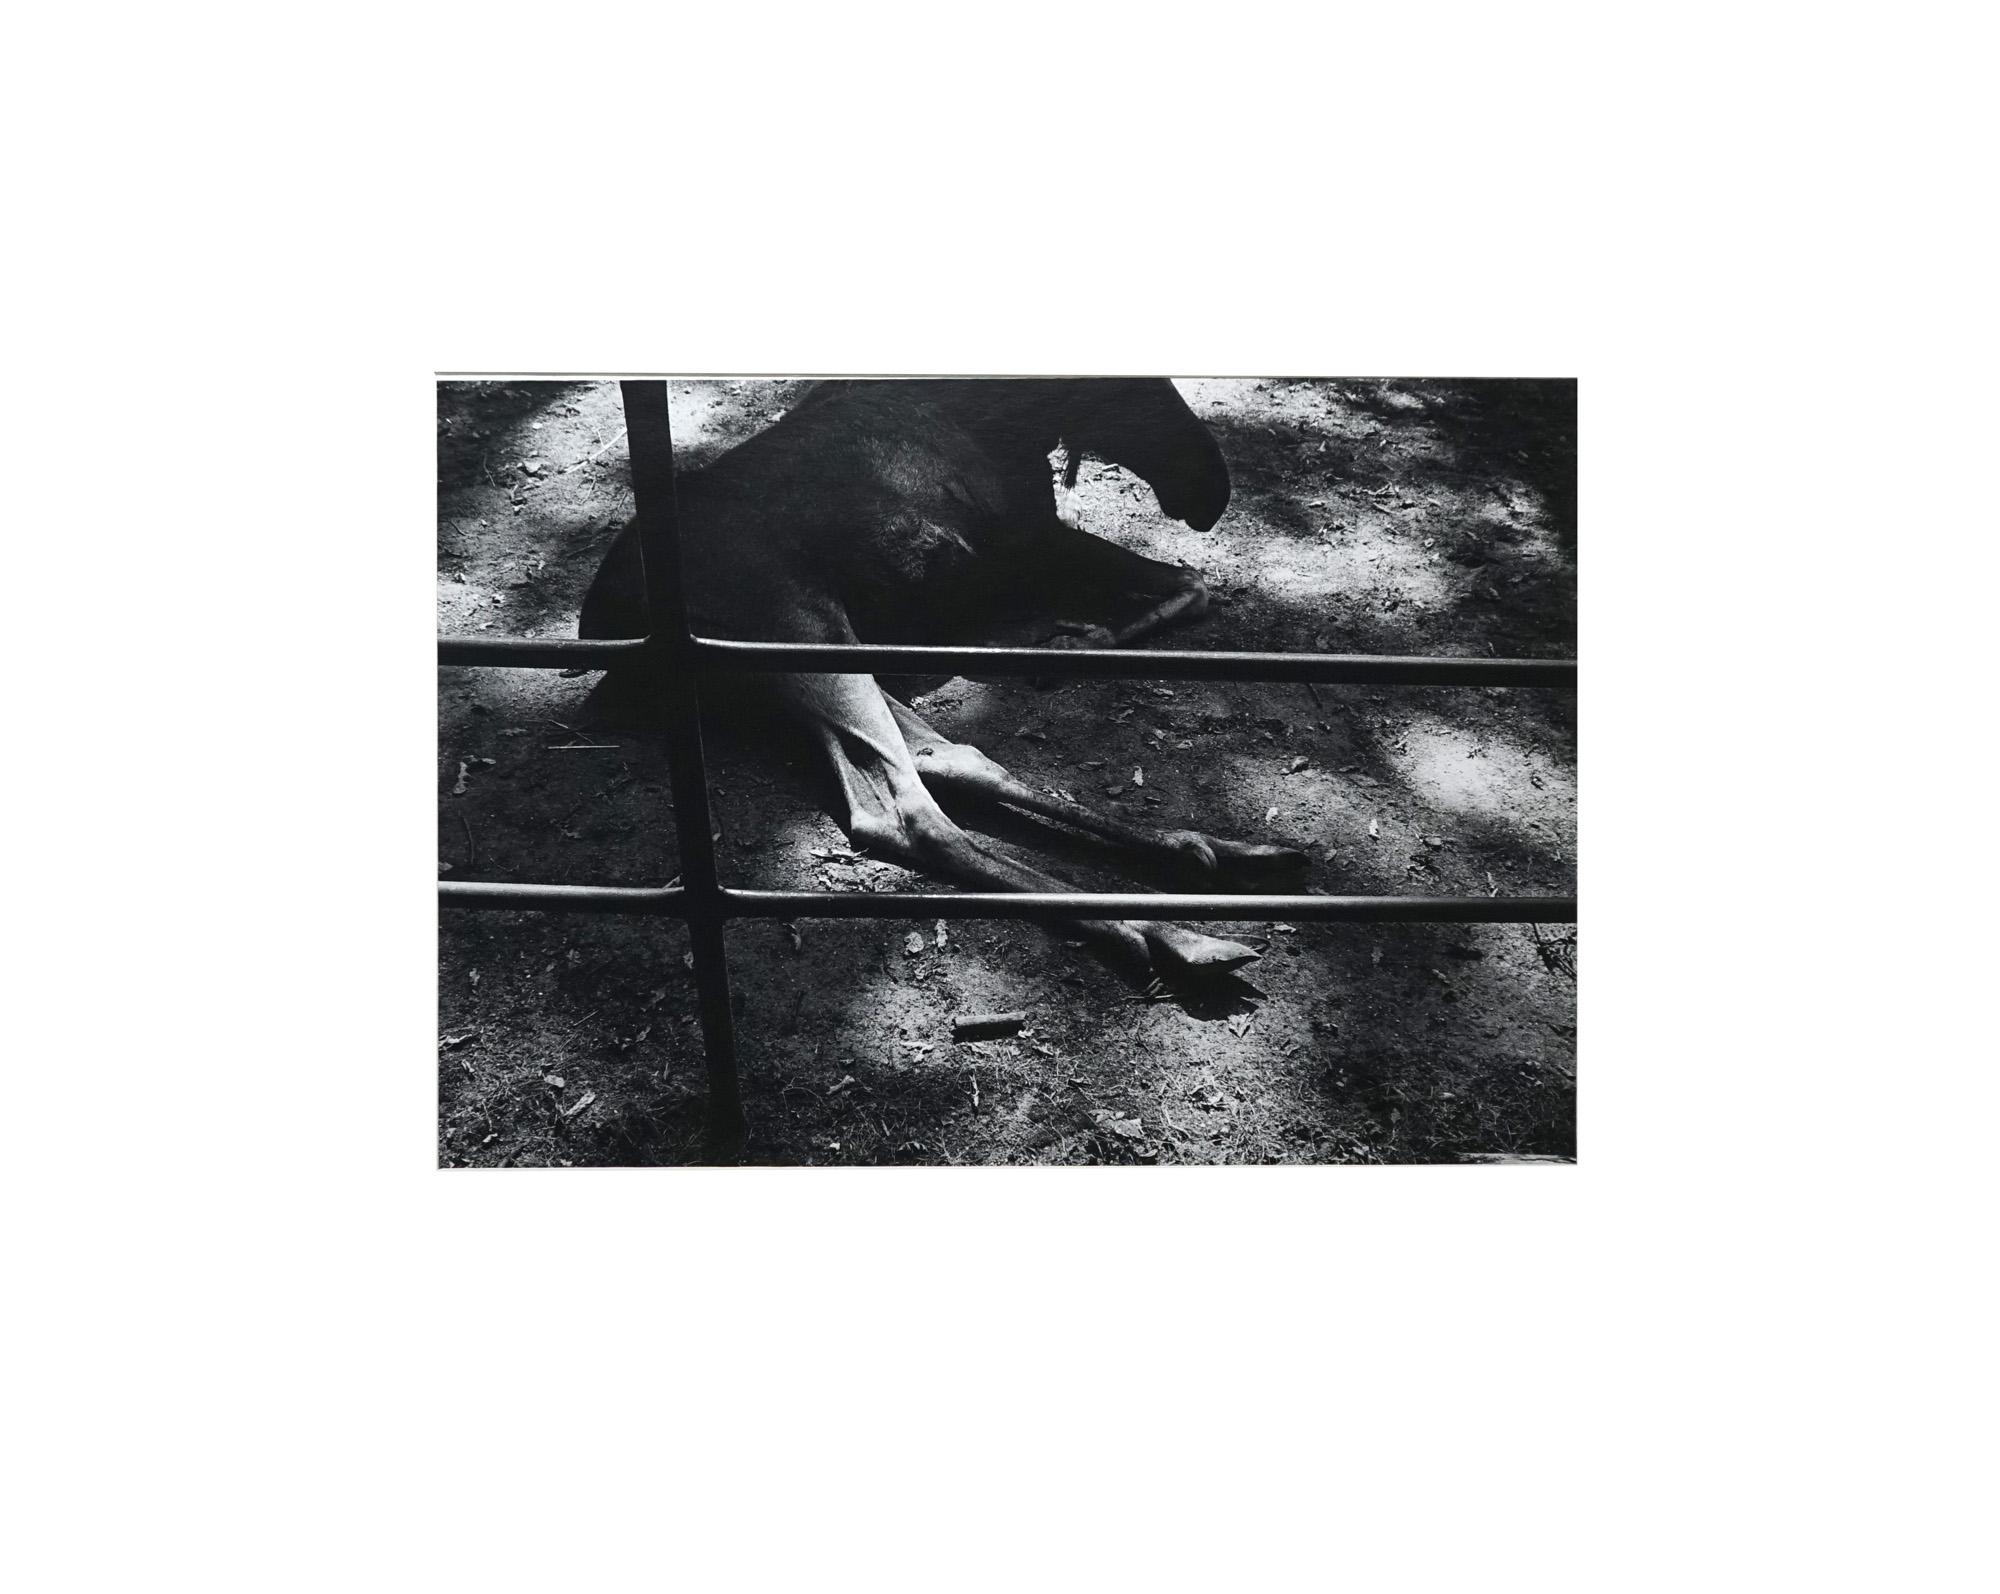 Parc Zoologique - Coffret Prestige # 3 - 1980, Minimalist Black and White Photog For Sale 3